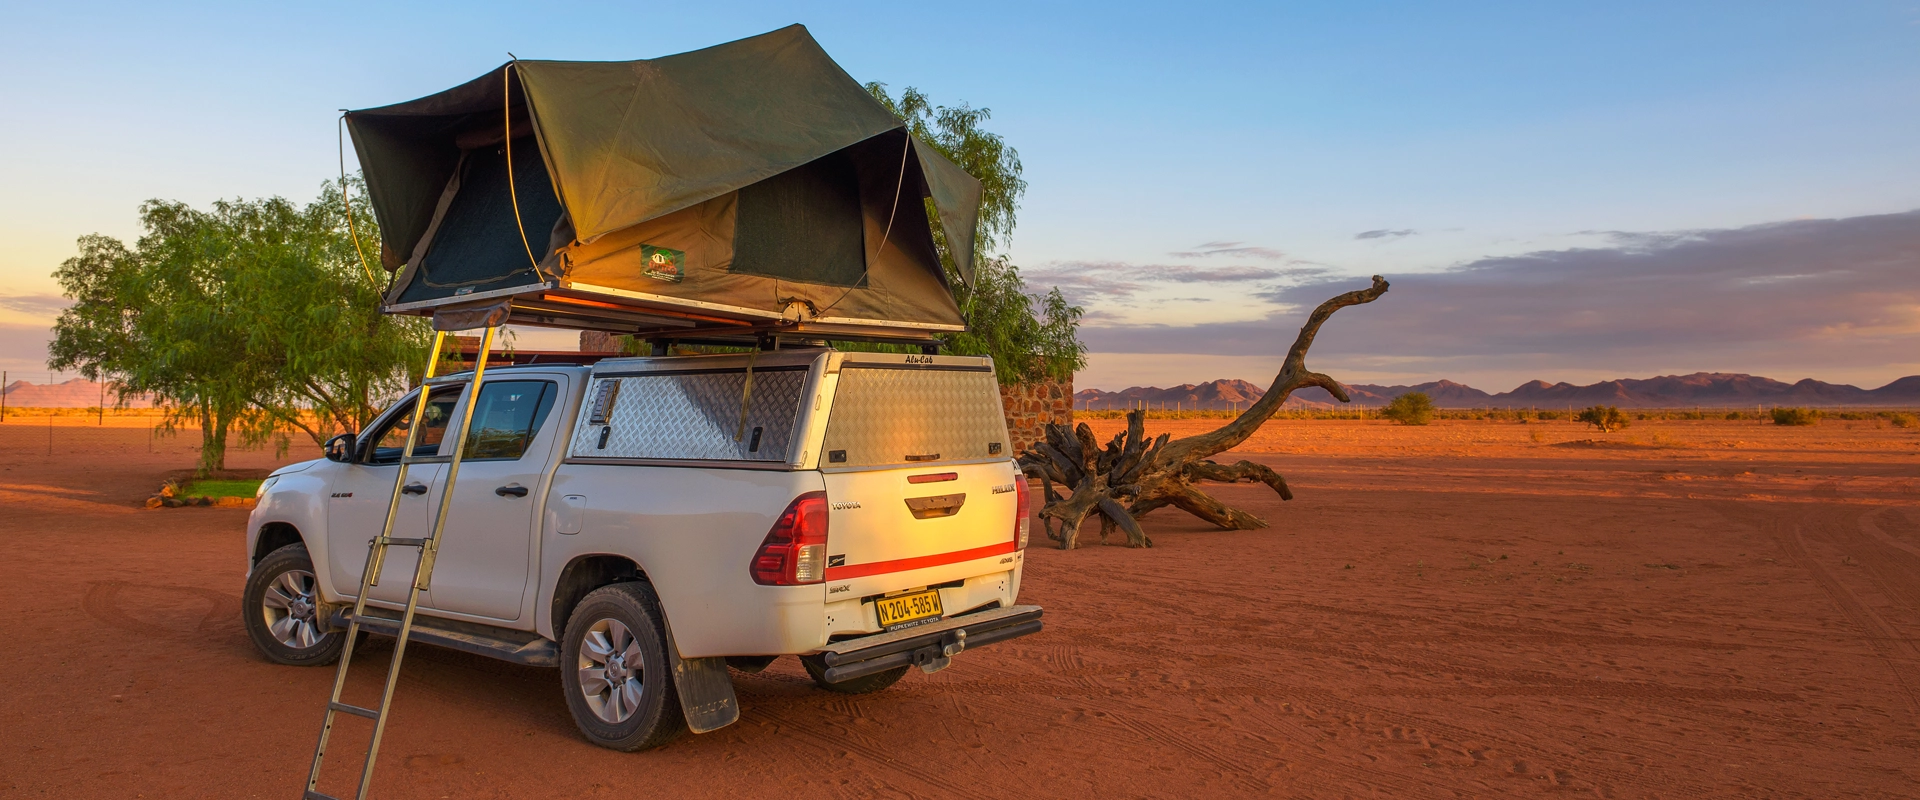 Voyage Namibie Camping